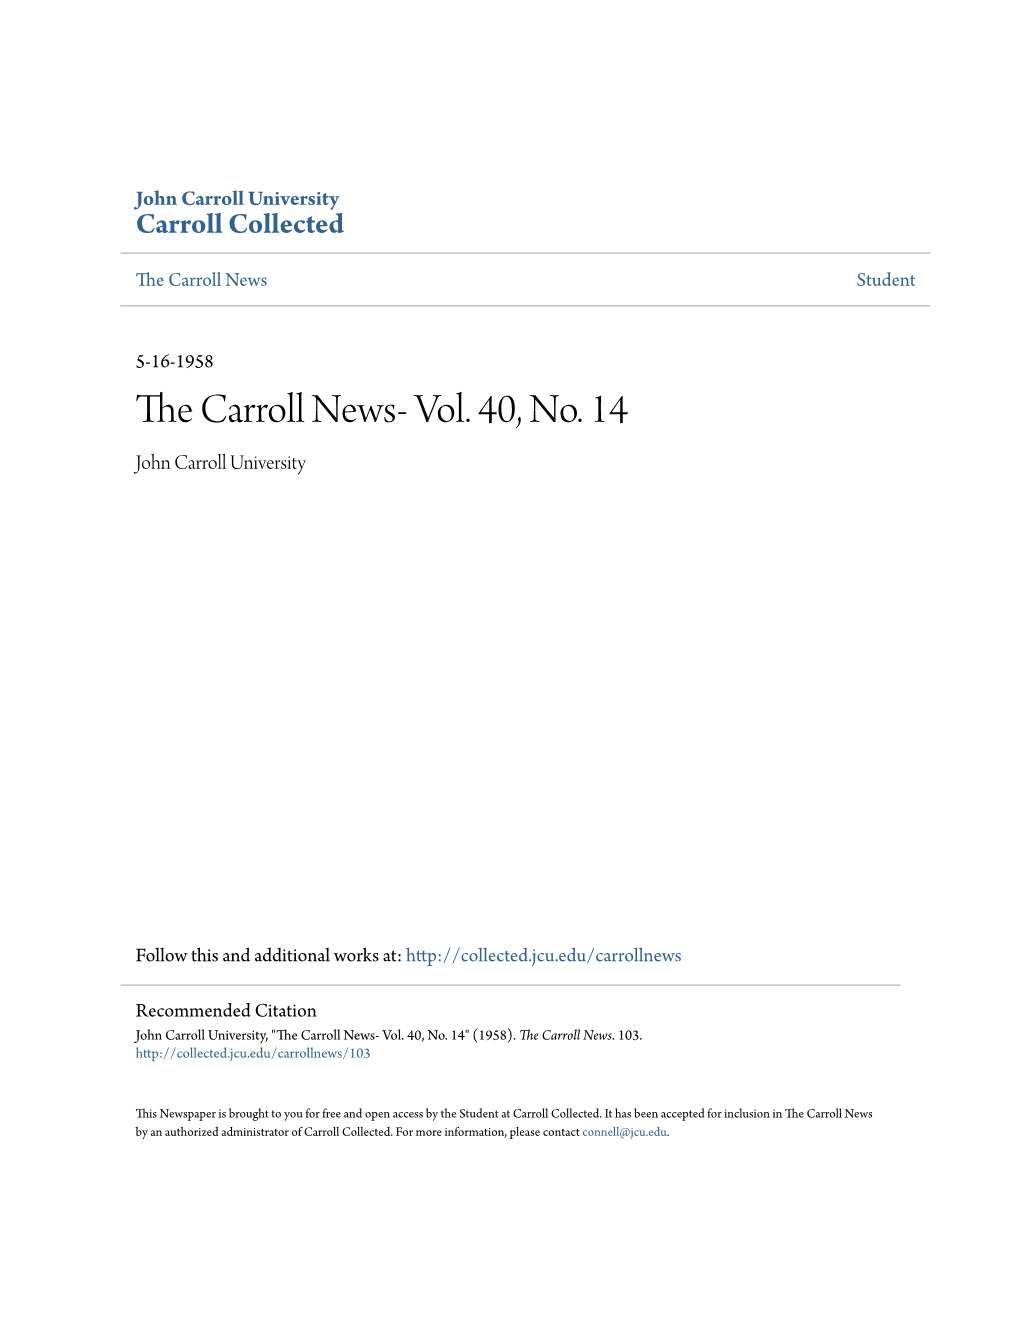 The Carroll News- Vol. 40, No. 14